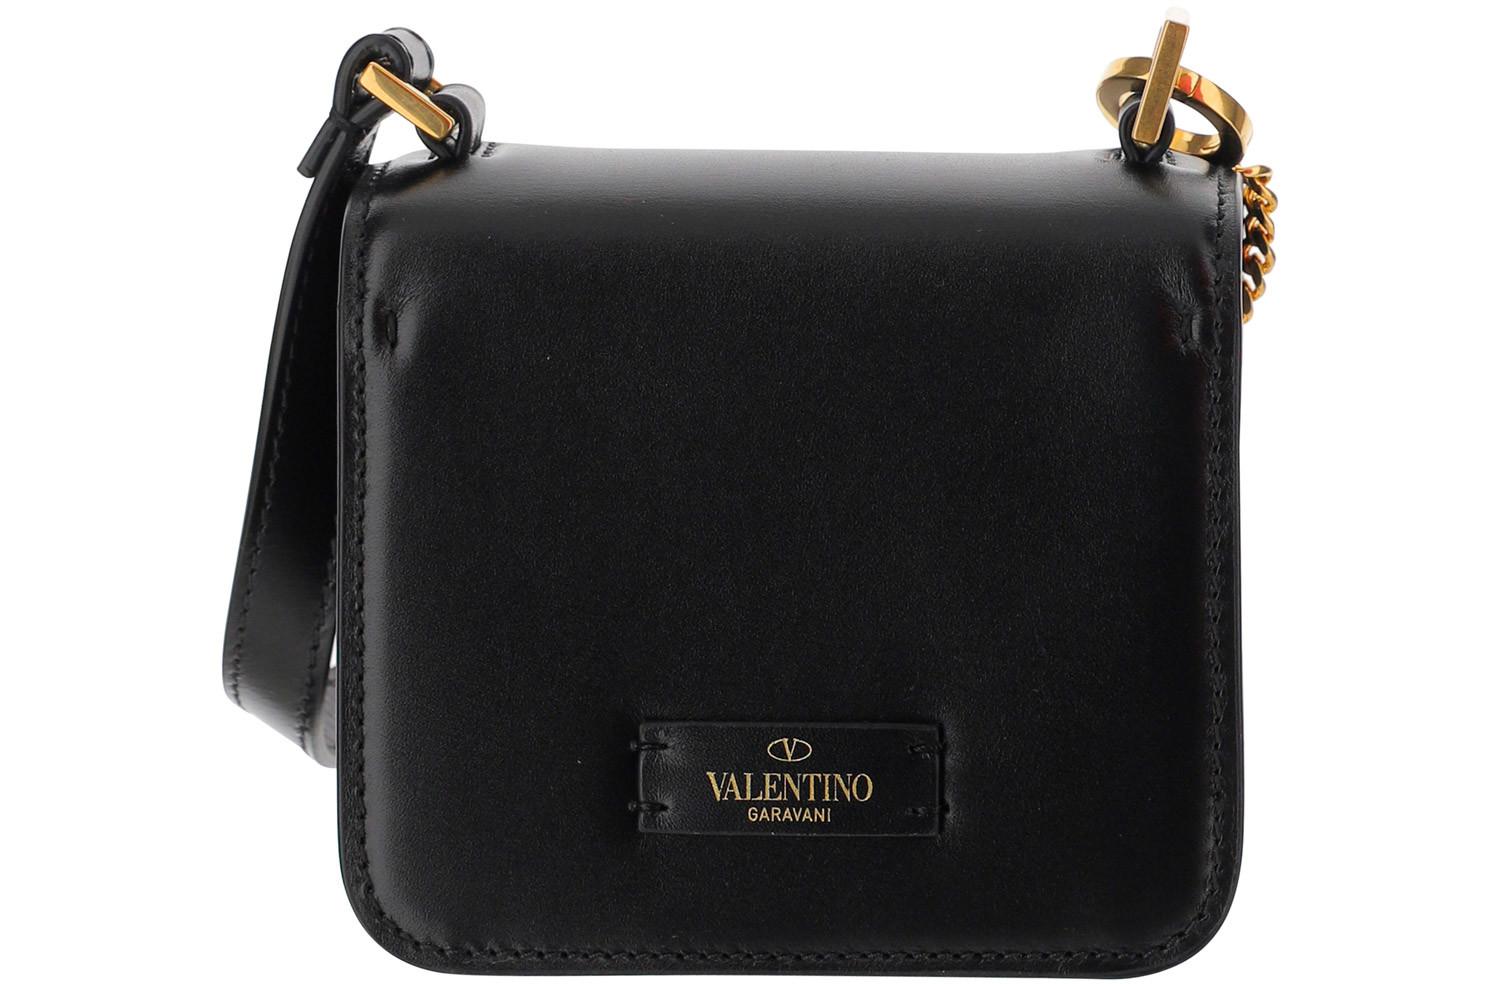 Valentino Garavani Vsling Leather Mini Bag - Black